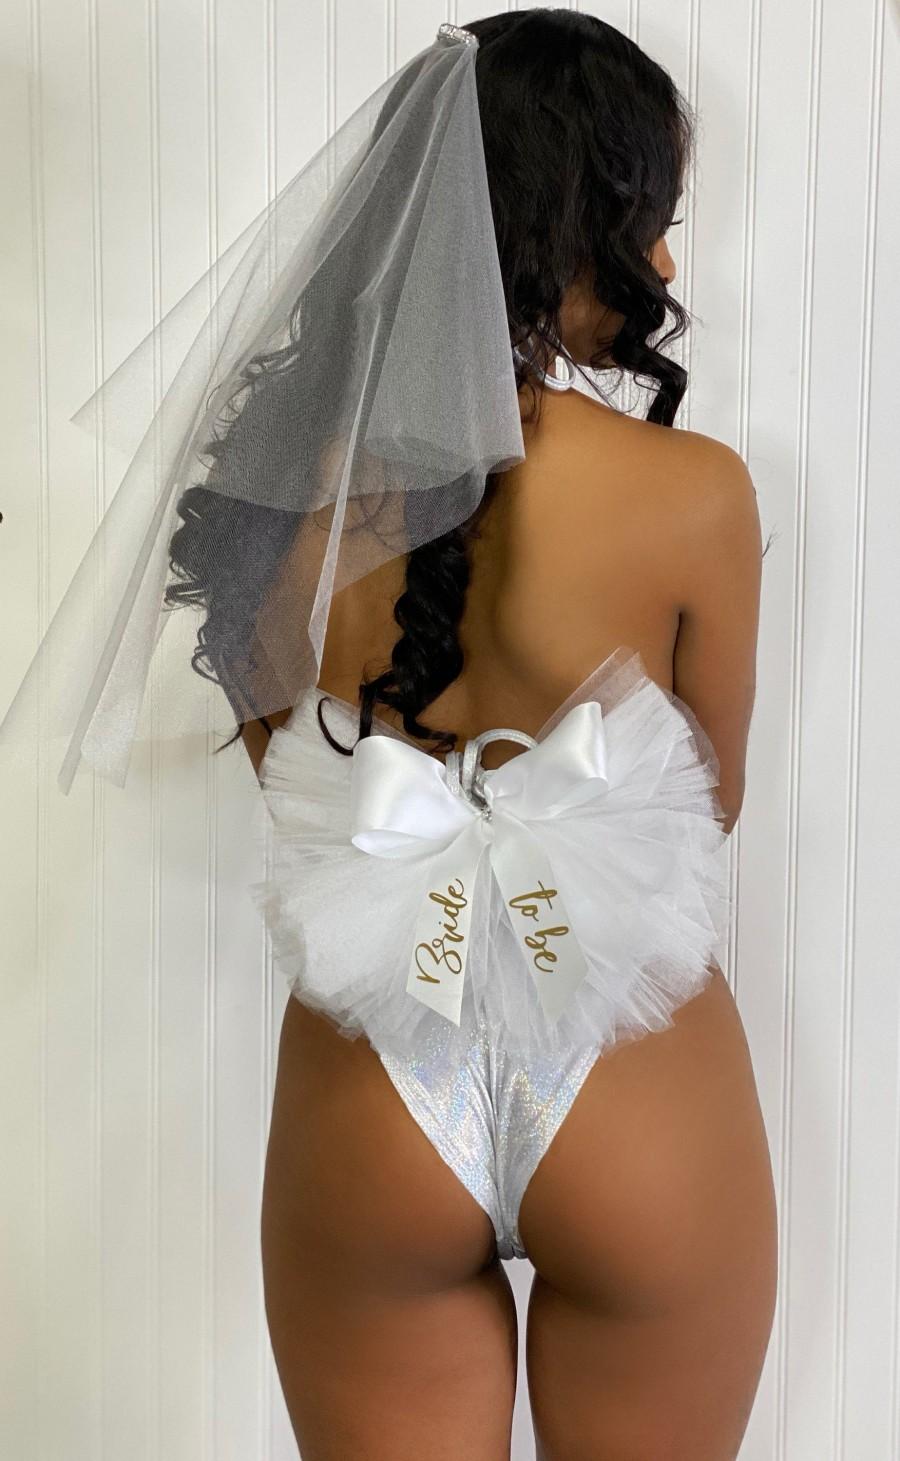 زفاف - Brides Booty Veil, Bachelorette Party, Bride to be bikini veil for bridal Party Tutu Booty Veil, Pool Party Veil